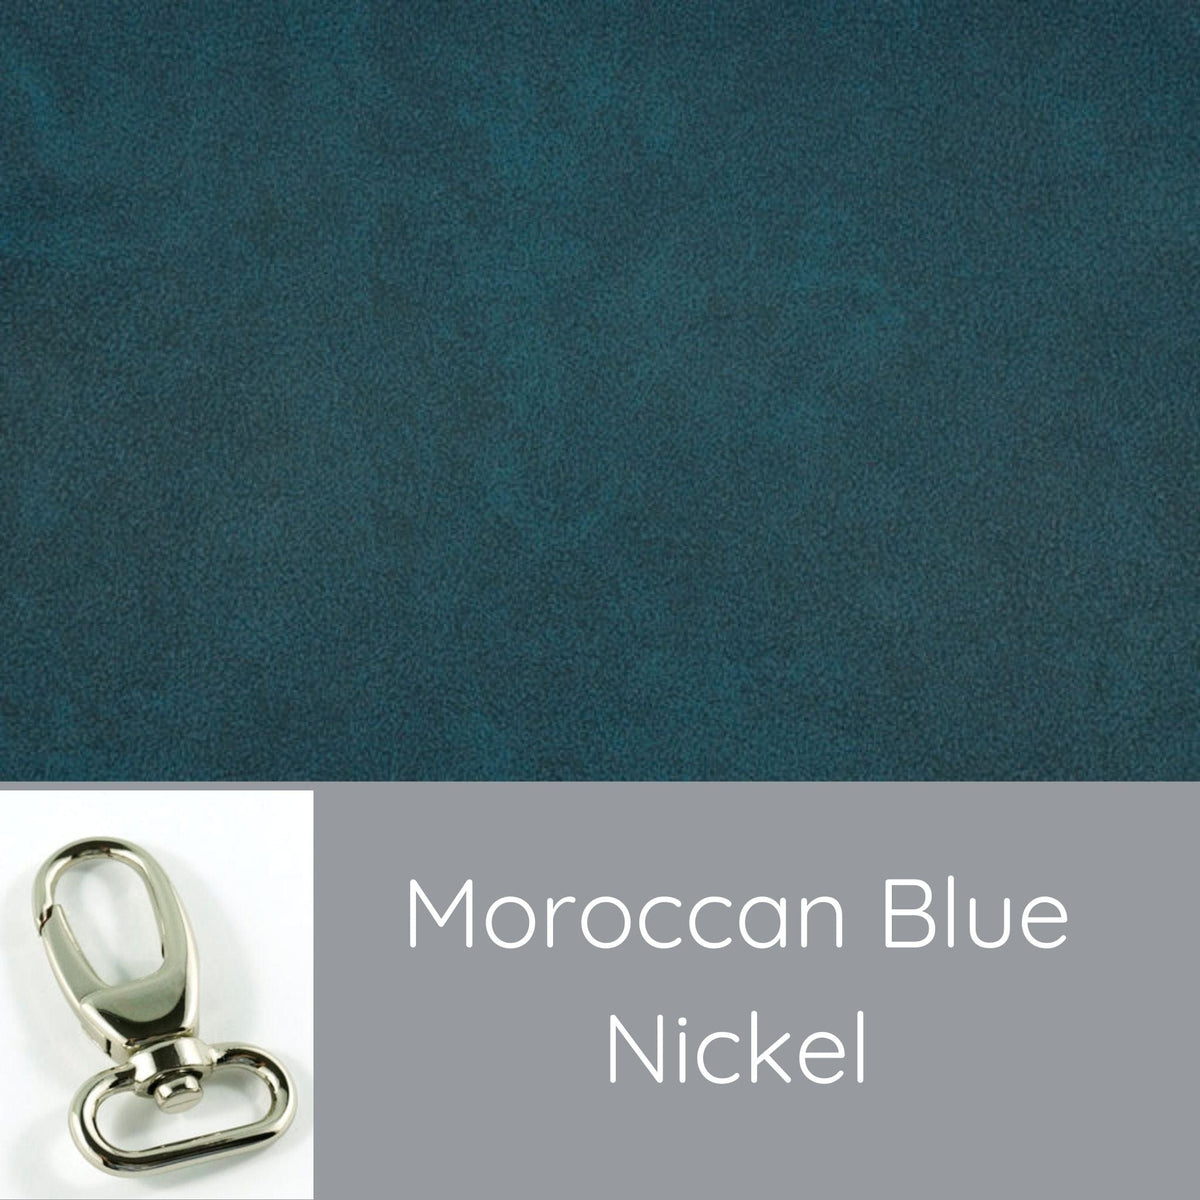 Moonwake-Moonwake - Moroccan Blue/Nickel - Fire Sparks Creations